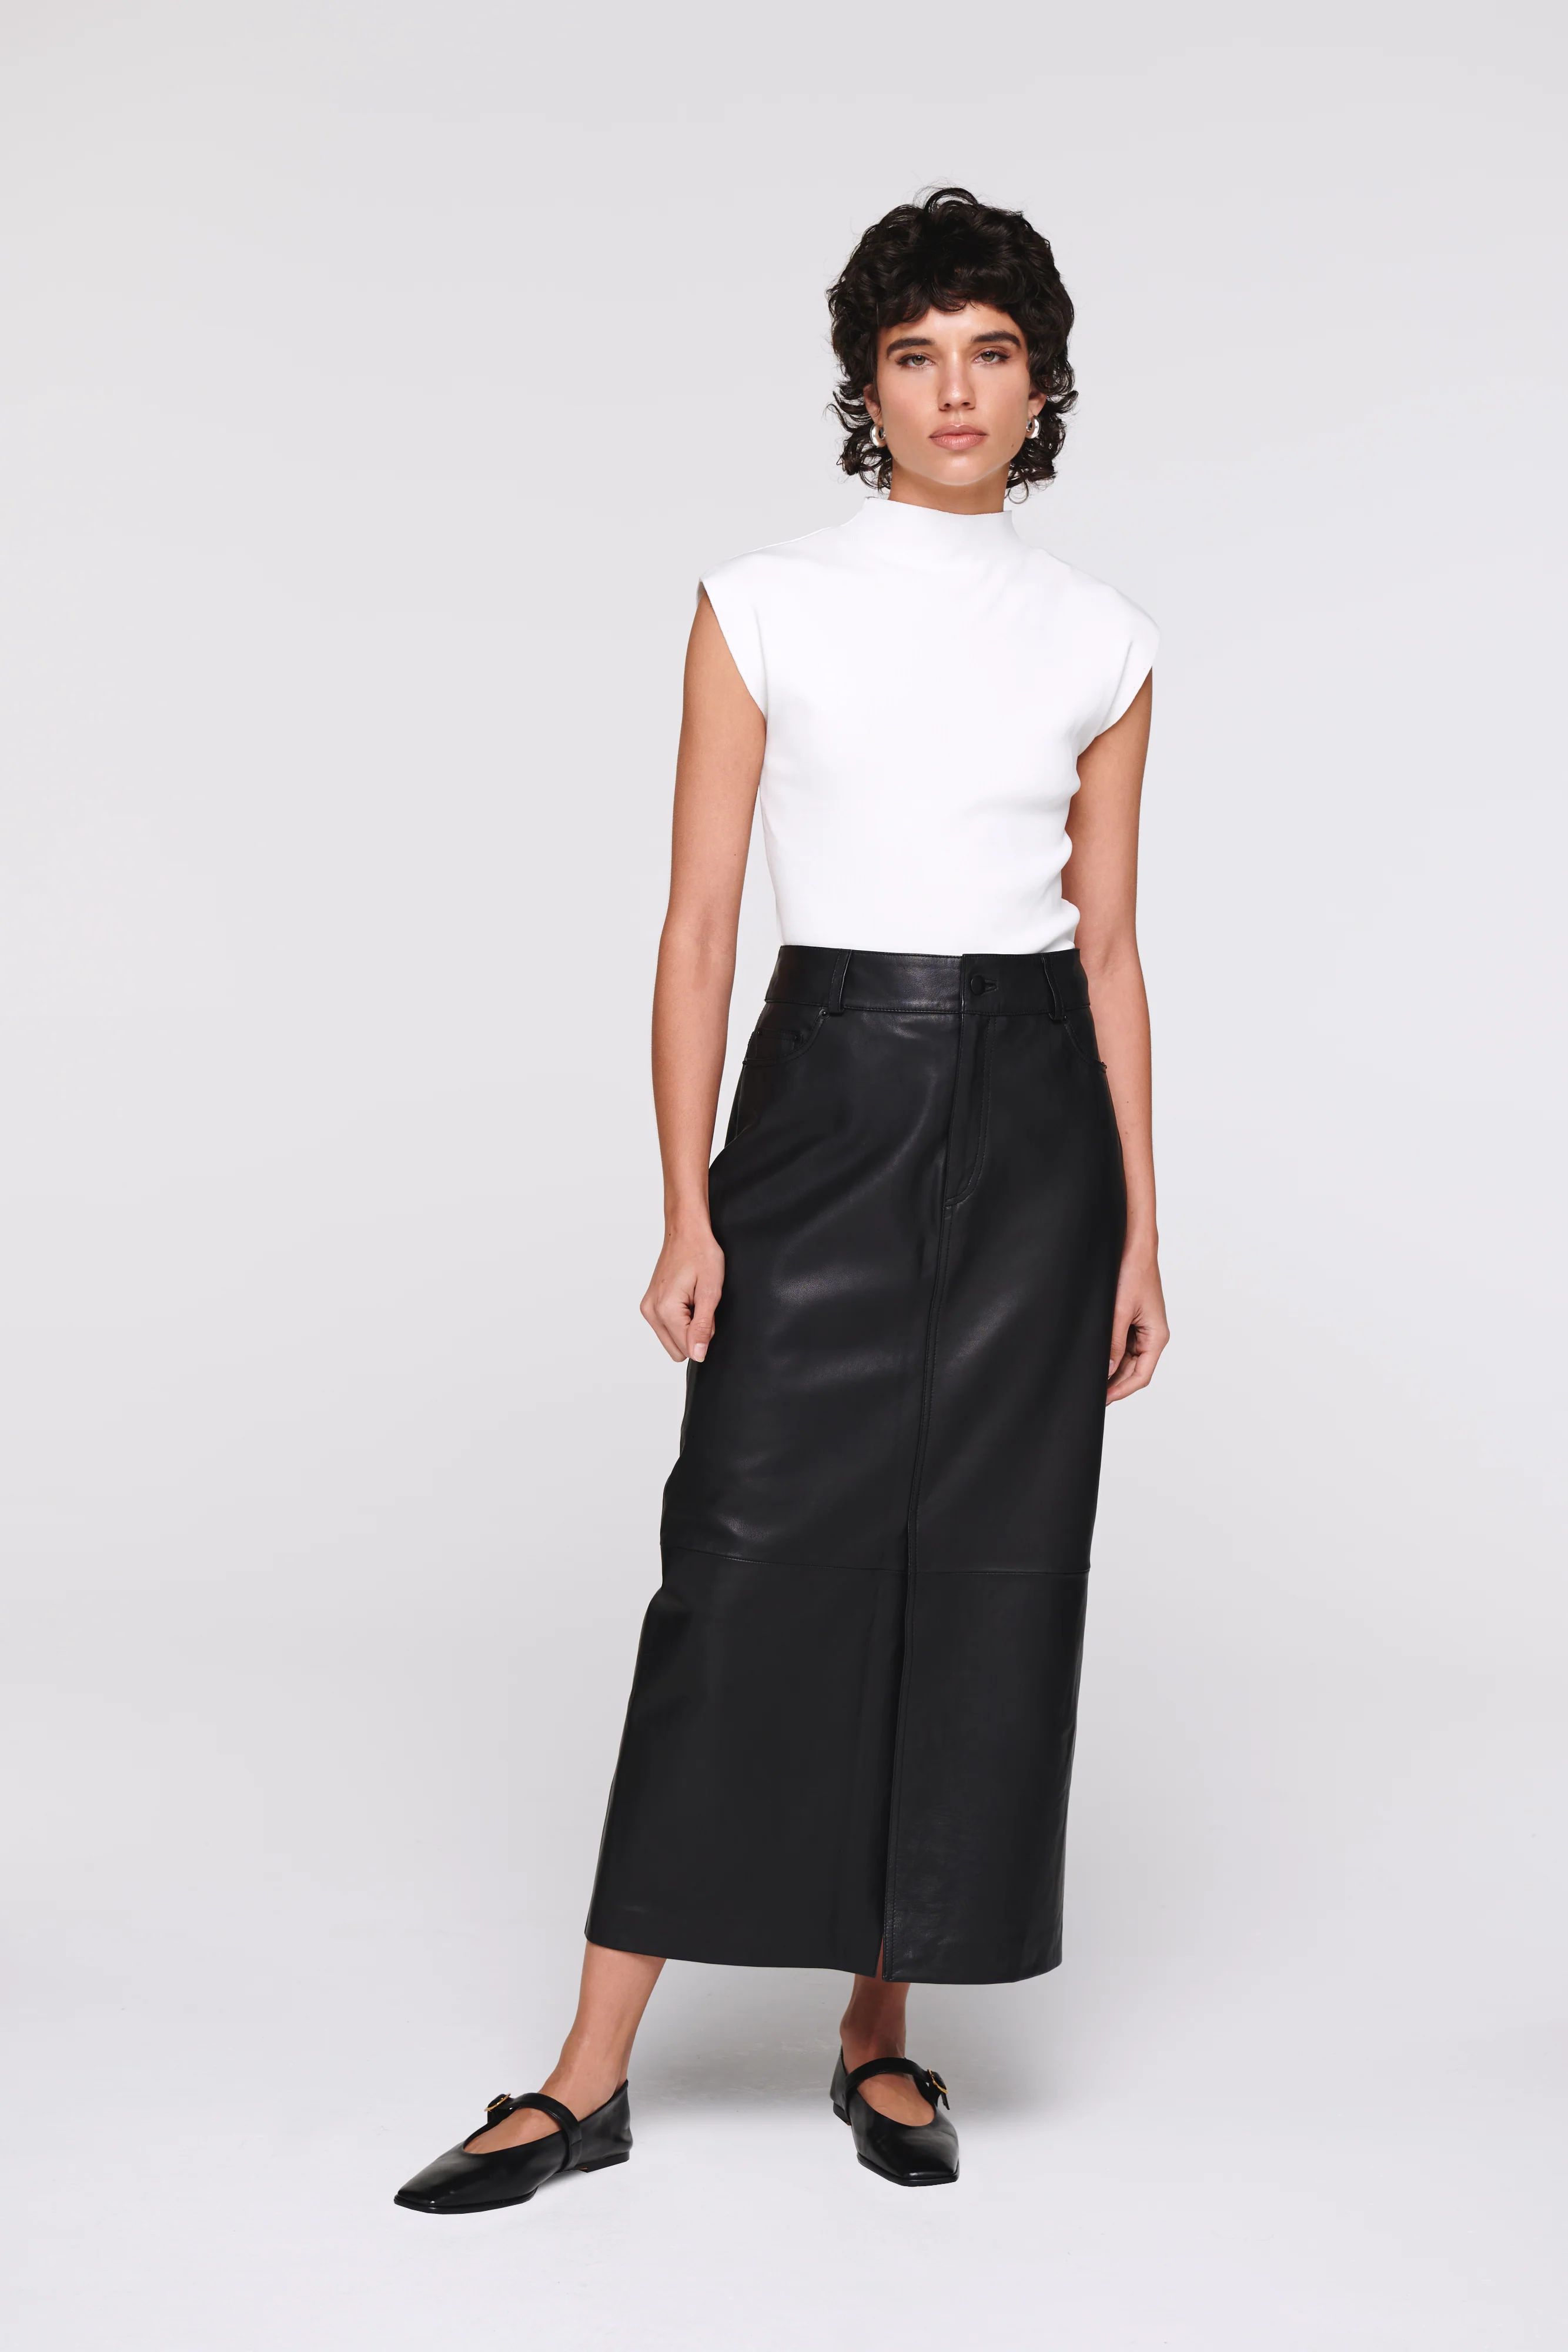 Greta | Midi Skirt in Leather | ALIGNE | Aligne UK